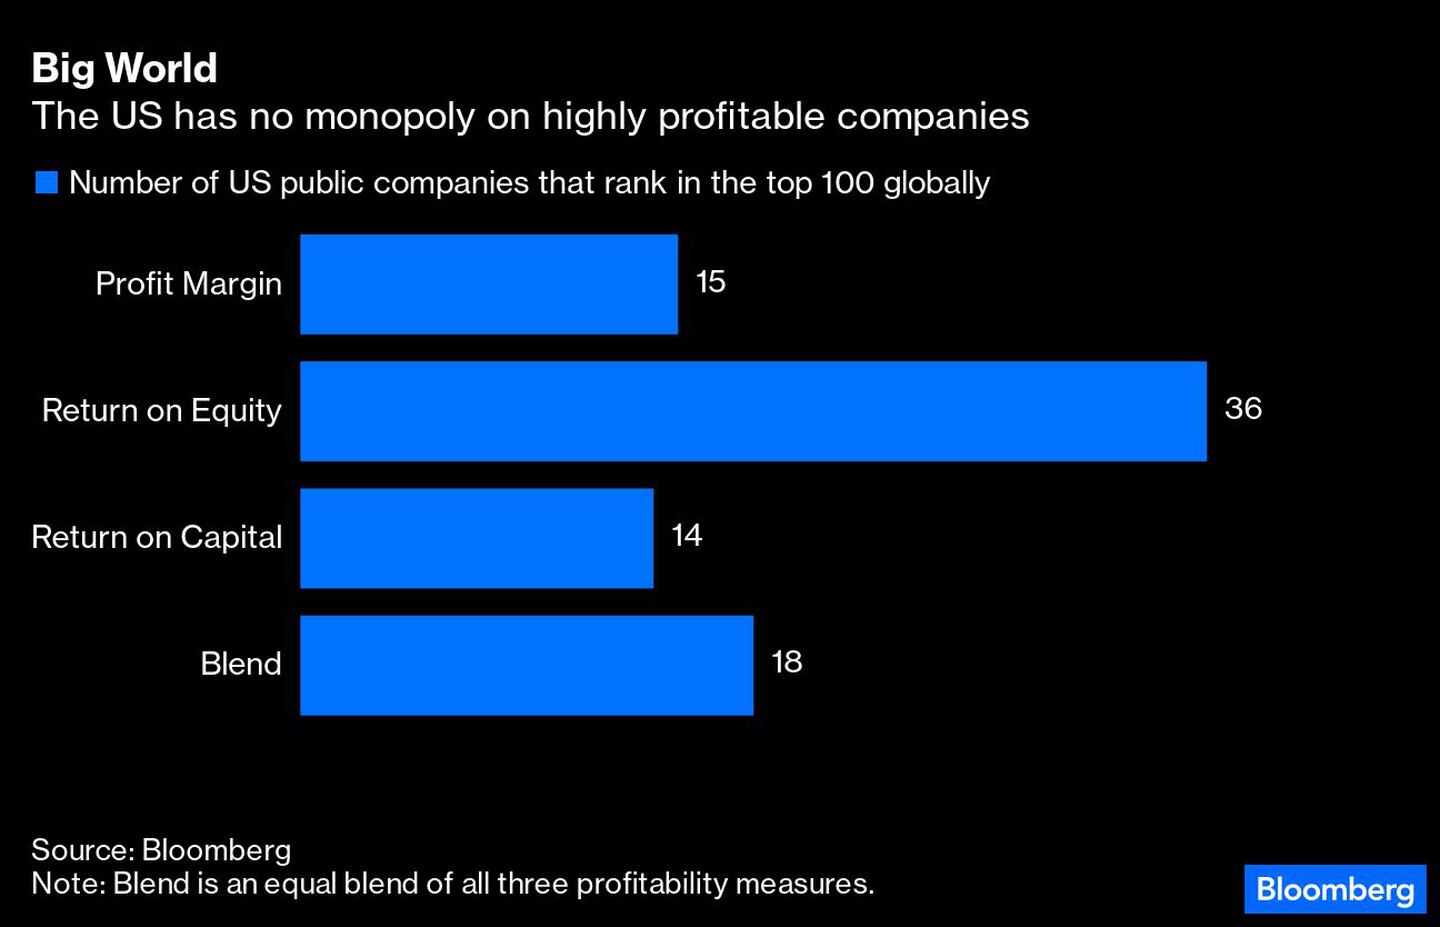 EEUU no tiene el monopolio sobre las compañías con altos niveles de beneficiosdfd